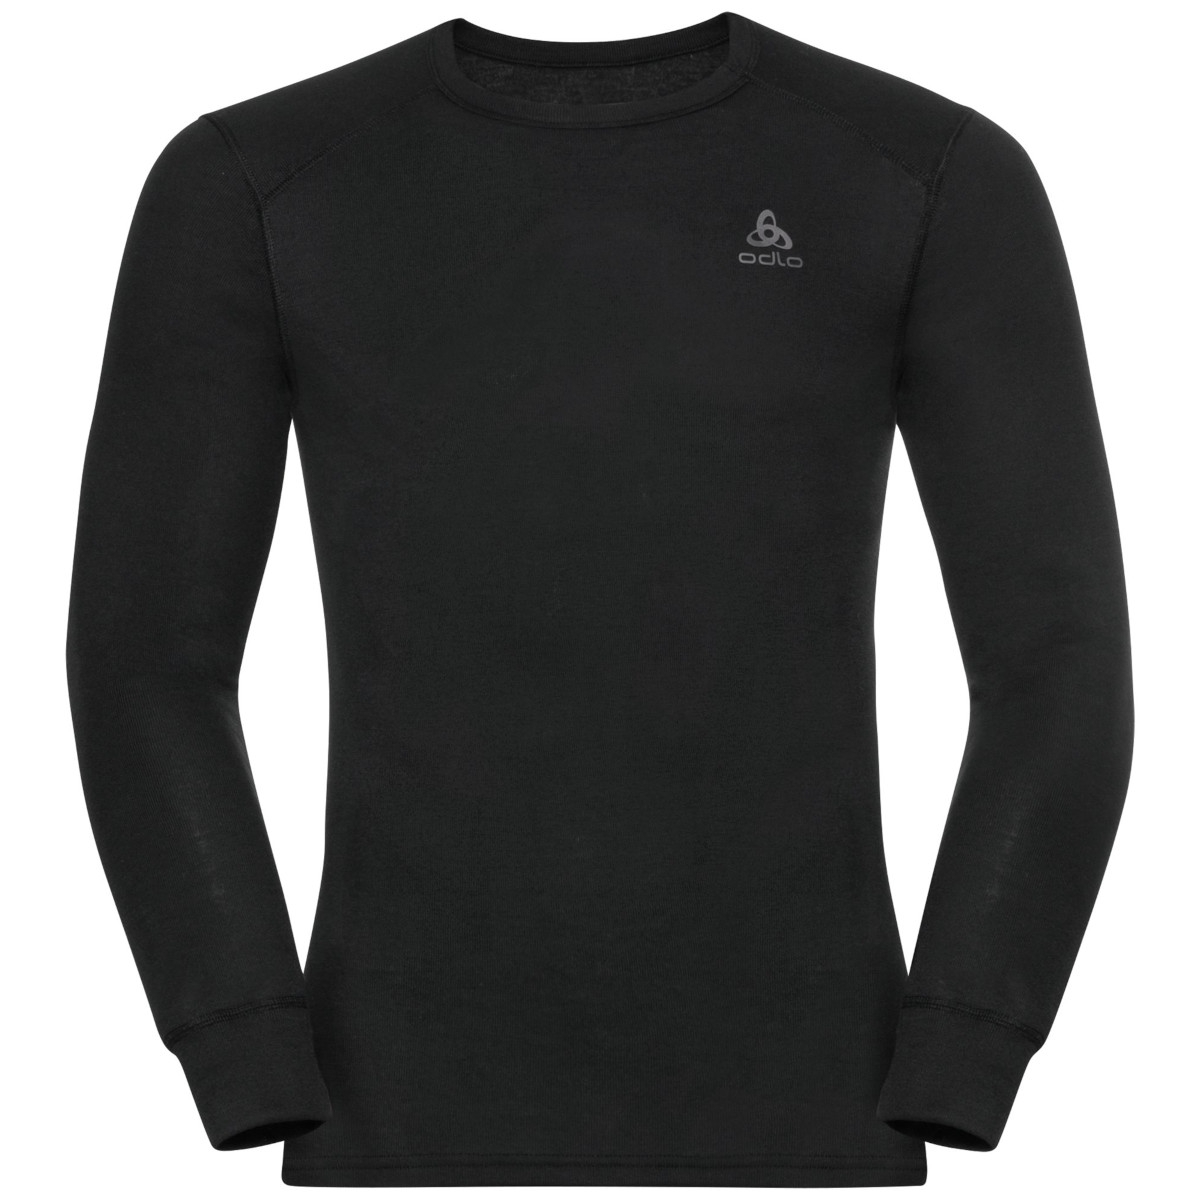 Produktbild von Odlo Active Warm Langarm-Unterhemd Herren - schwarz